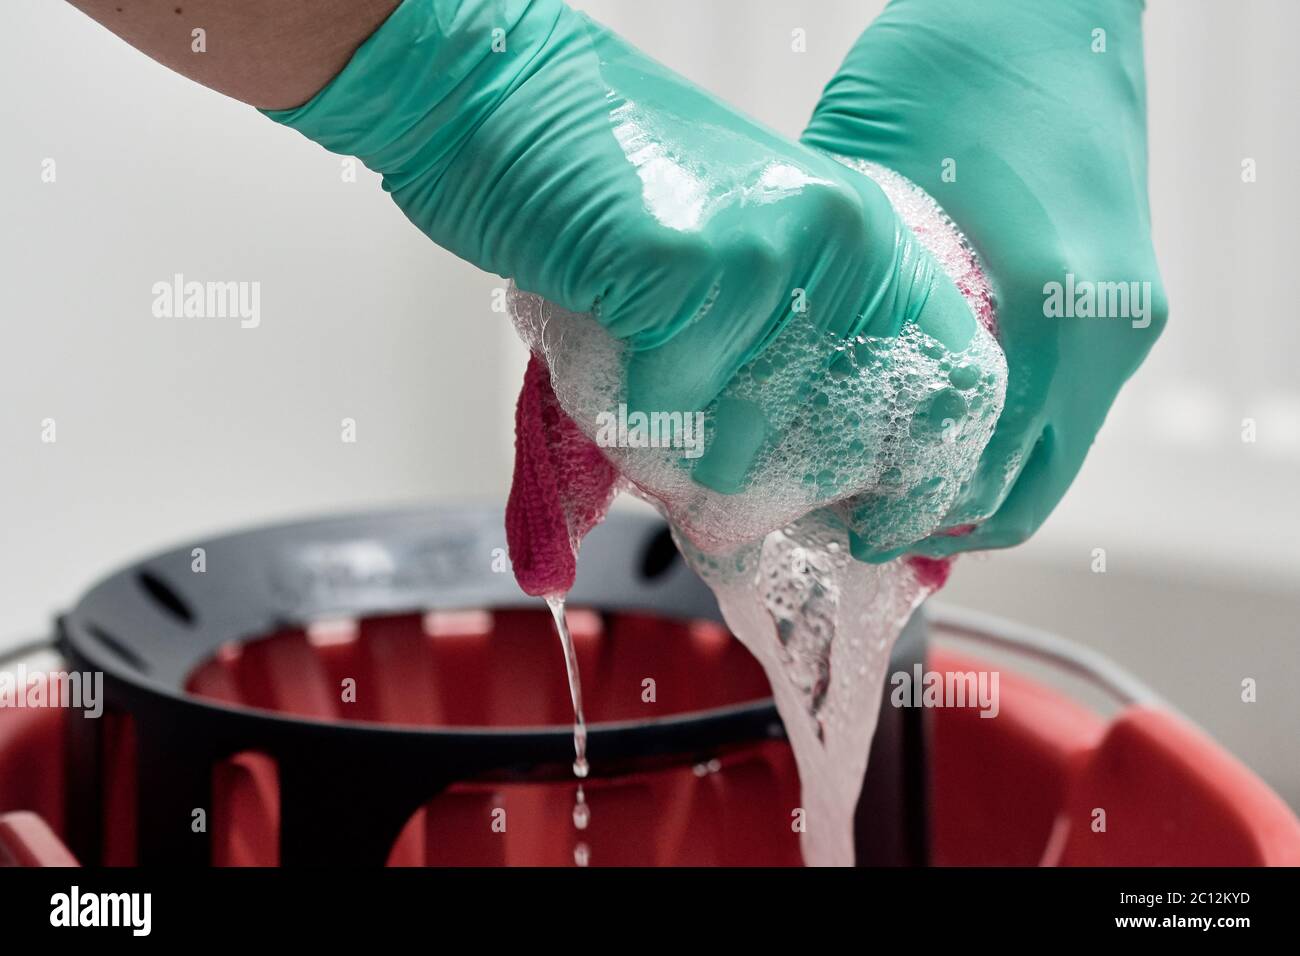 Nahaufnahme der Hände mit Handschuhen, die ein Reinigungstuch über den mit Wasser und Seife gefüllten Eimer auswringen Stockfoto